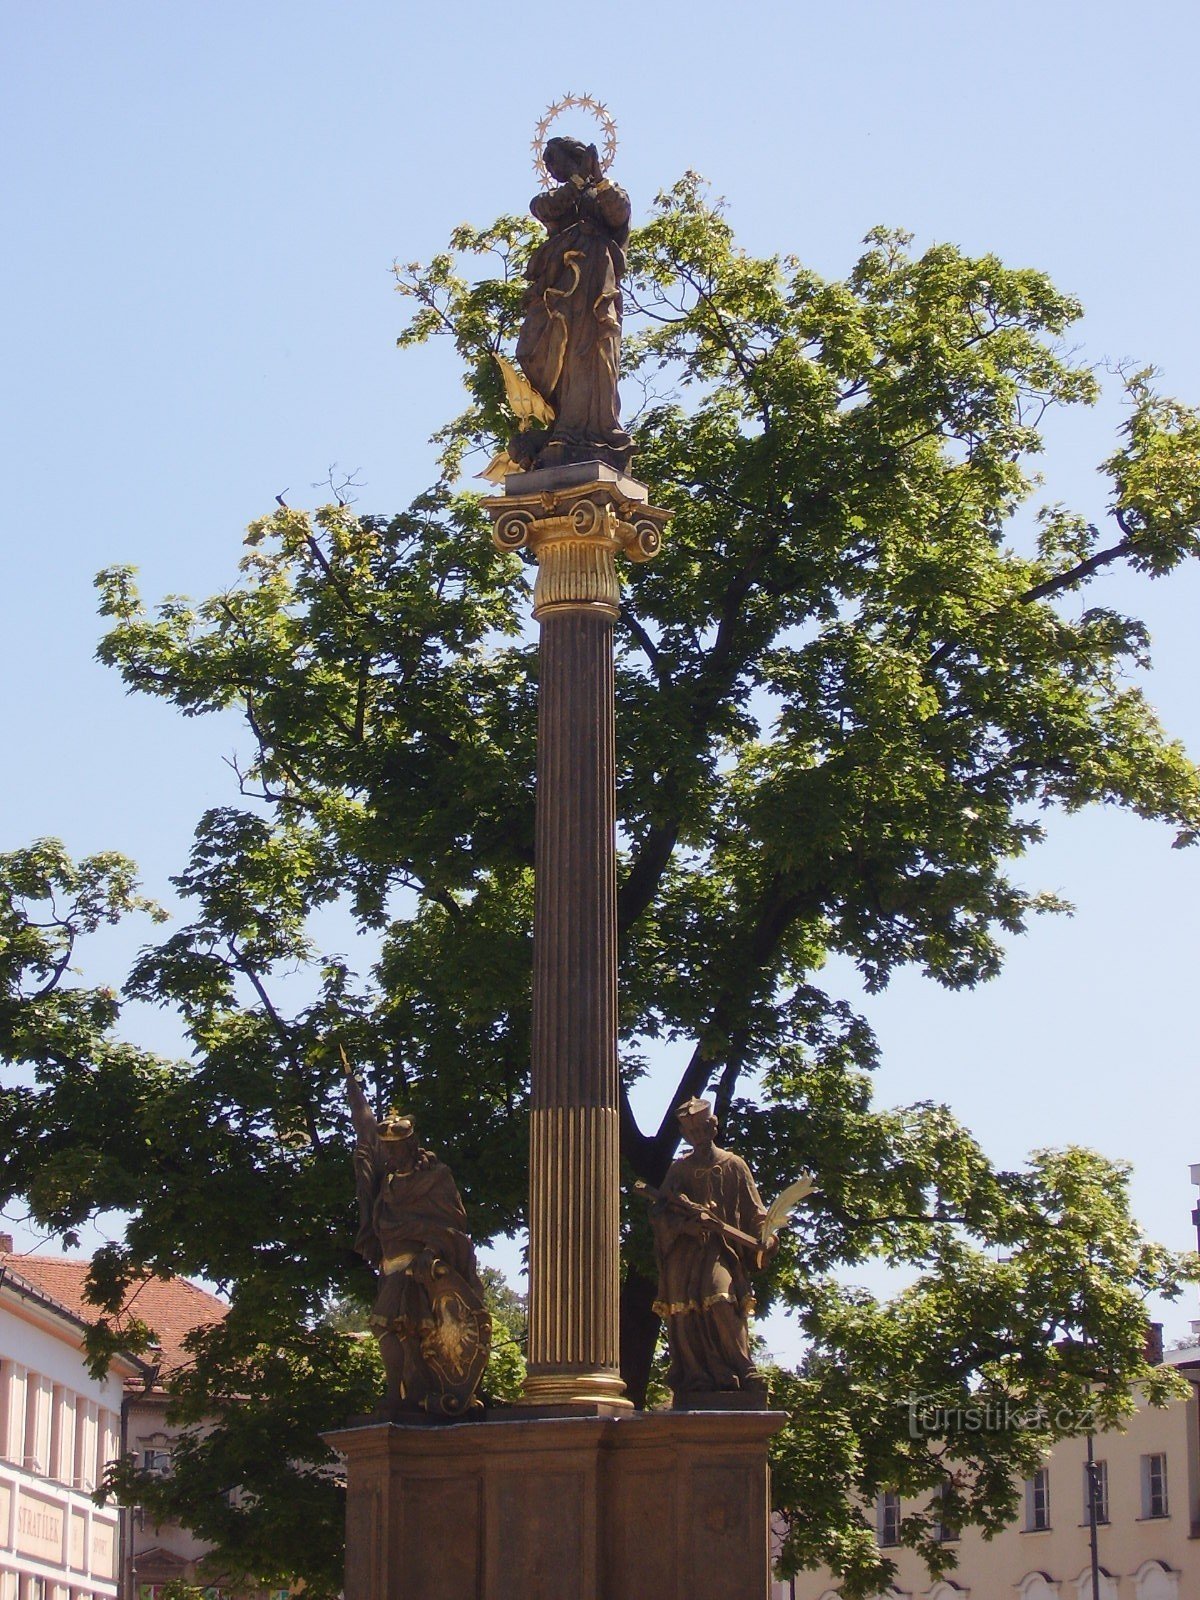 Tượng đài điêu khắc Baroque của Litomyšl